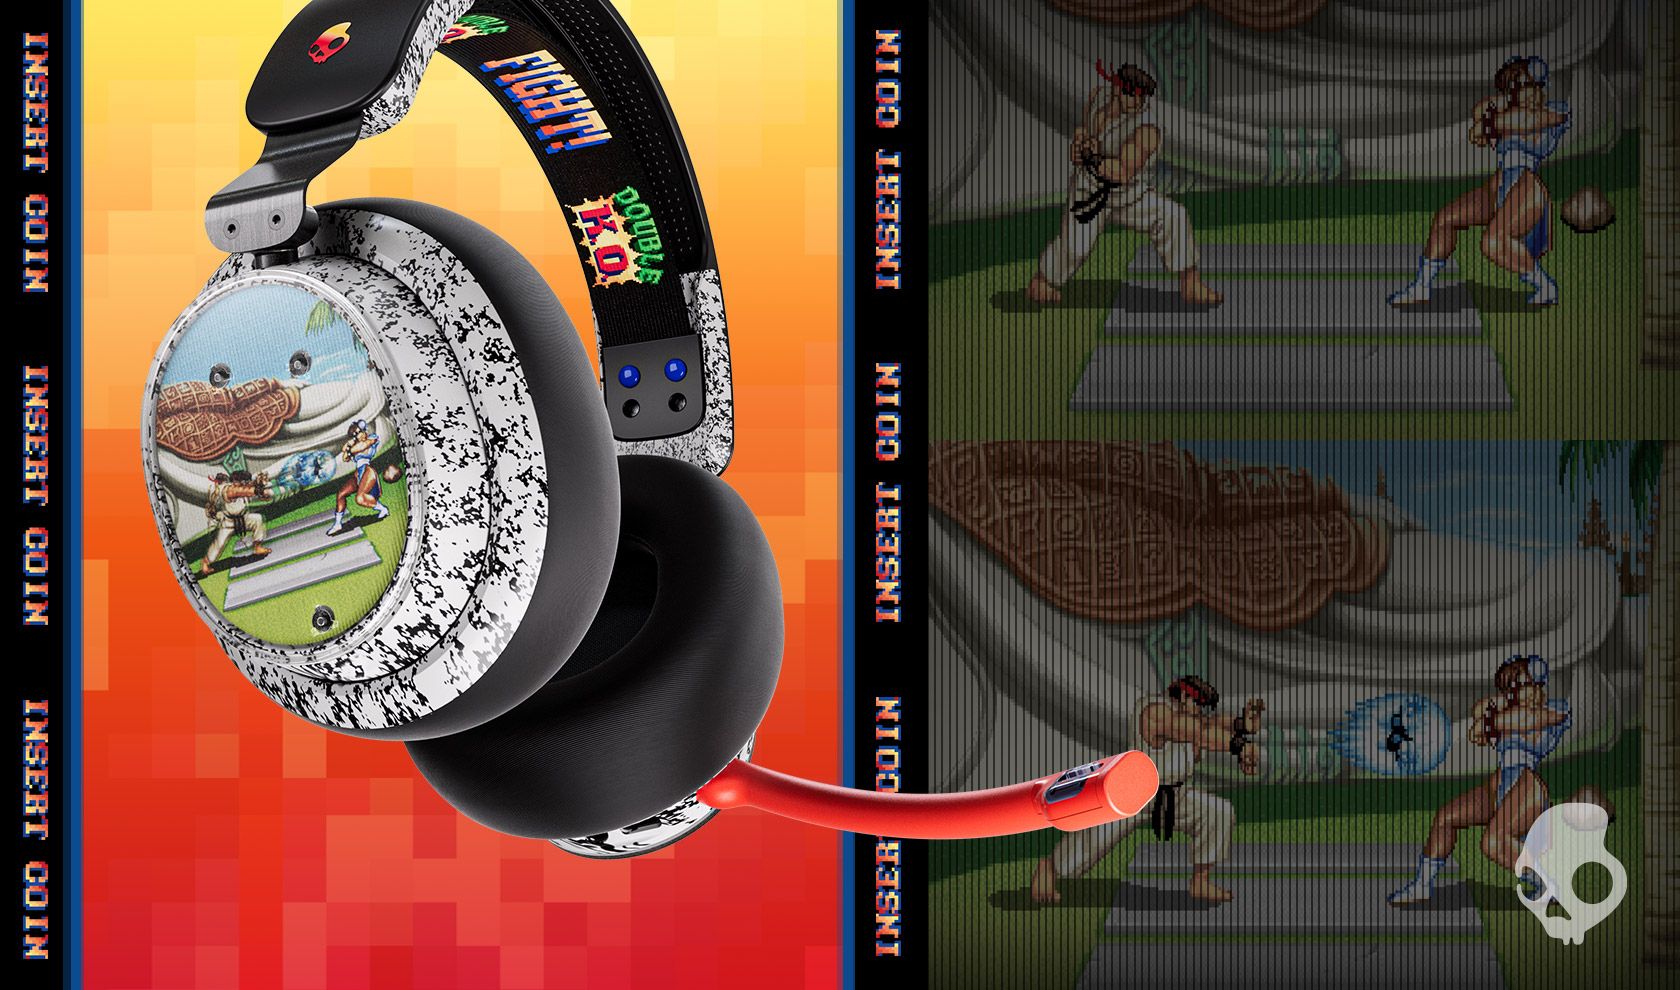 O headset Skullcandy Street Fighter está cheio de nostalgia de Street Fighter 2, incluindo uma imagem de Ryu e ChunLi lutando na lateral do headset.